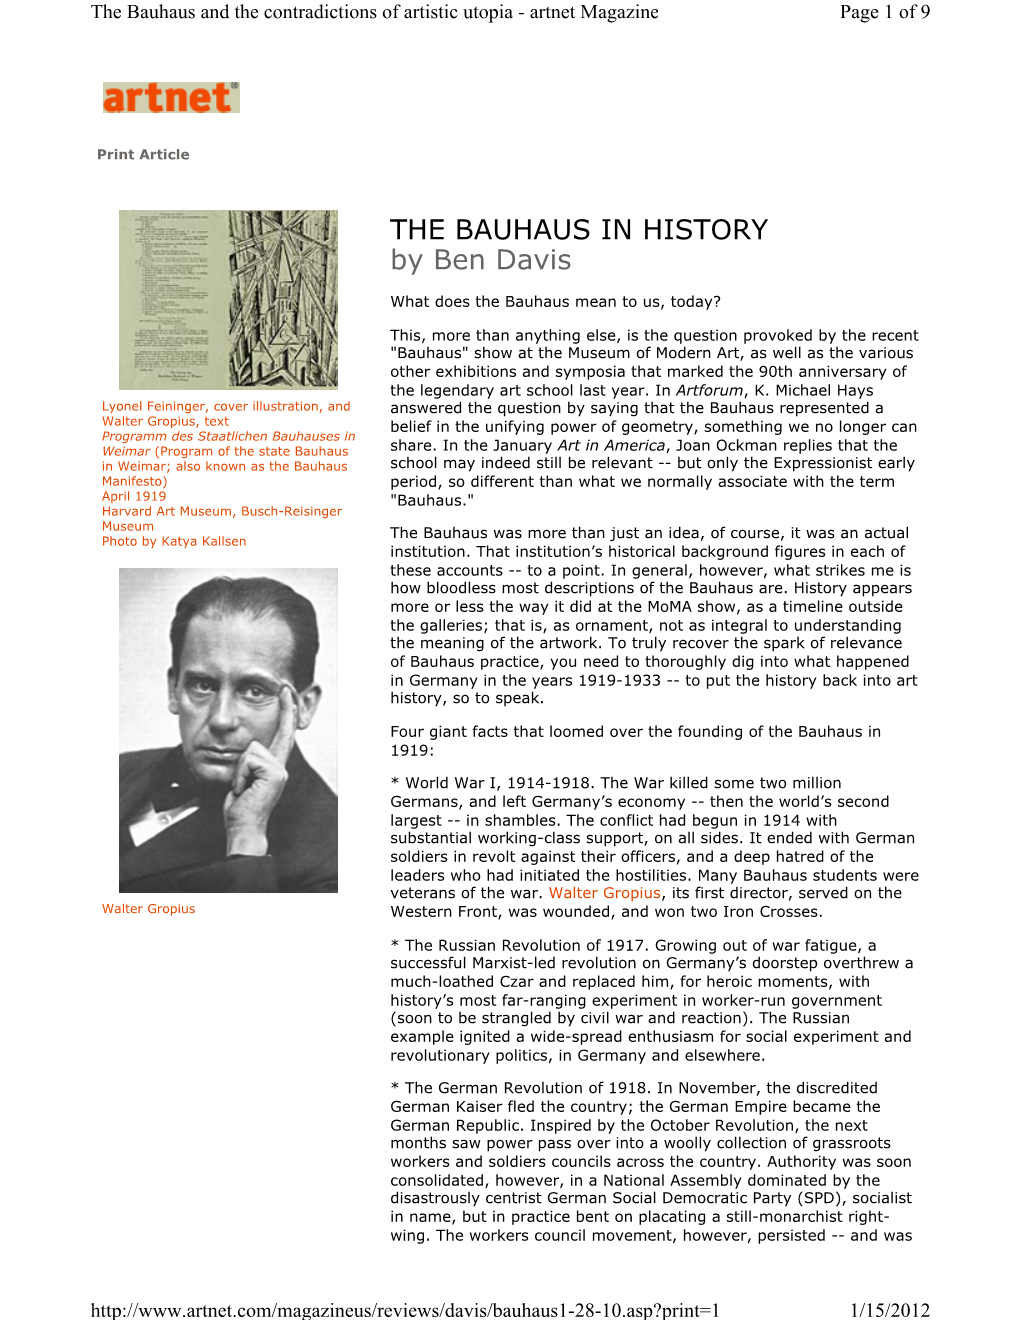 The Bauhaus in History (Artnet Magazine)